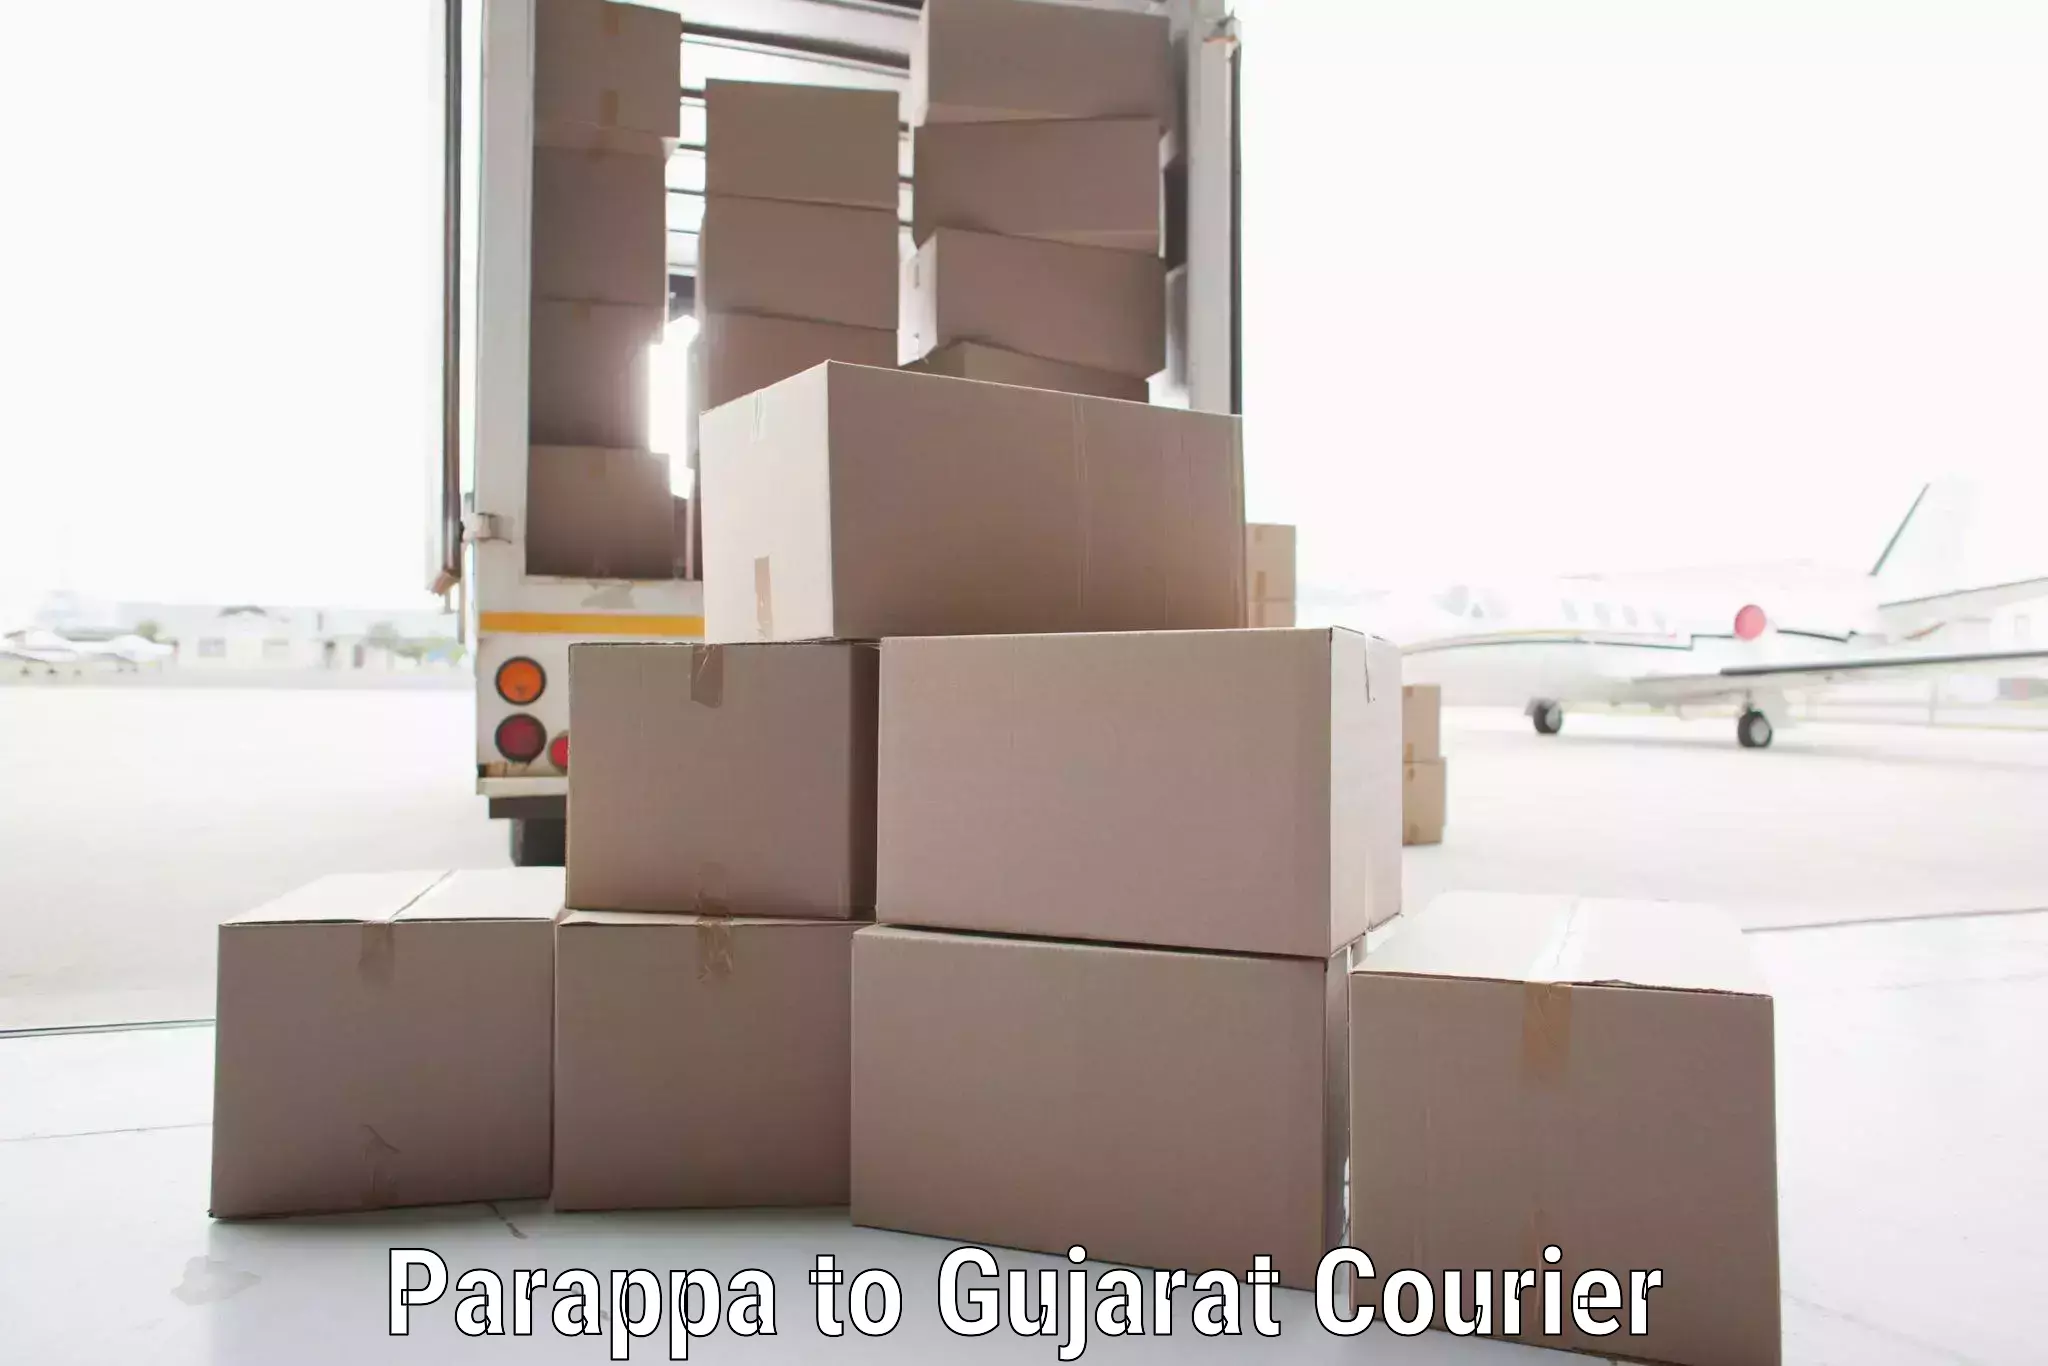 Efficient parcel delivery Parappa to Porbandar